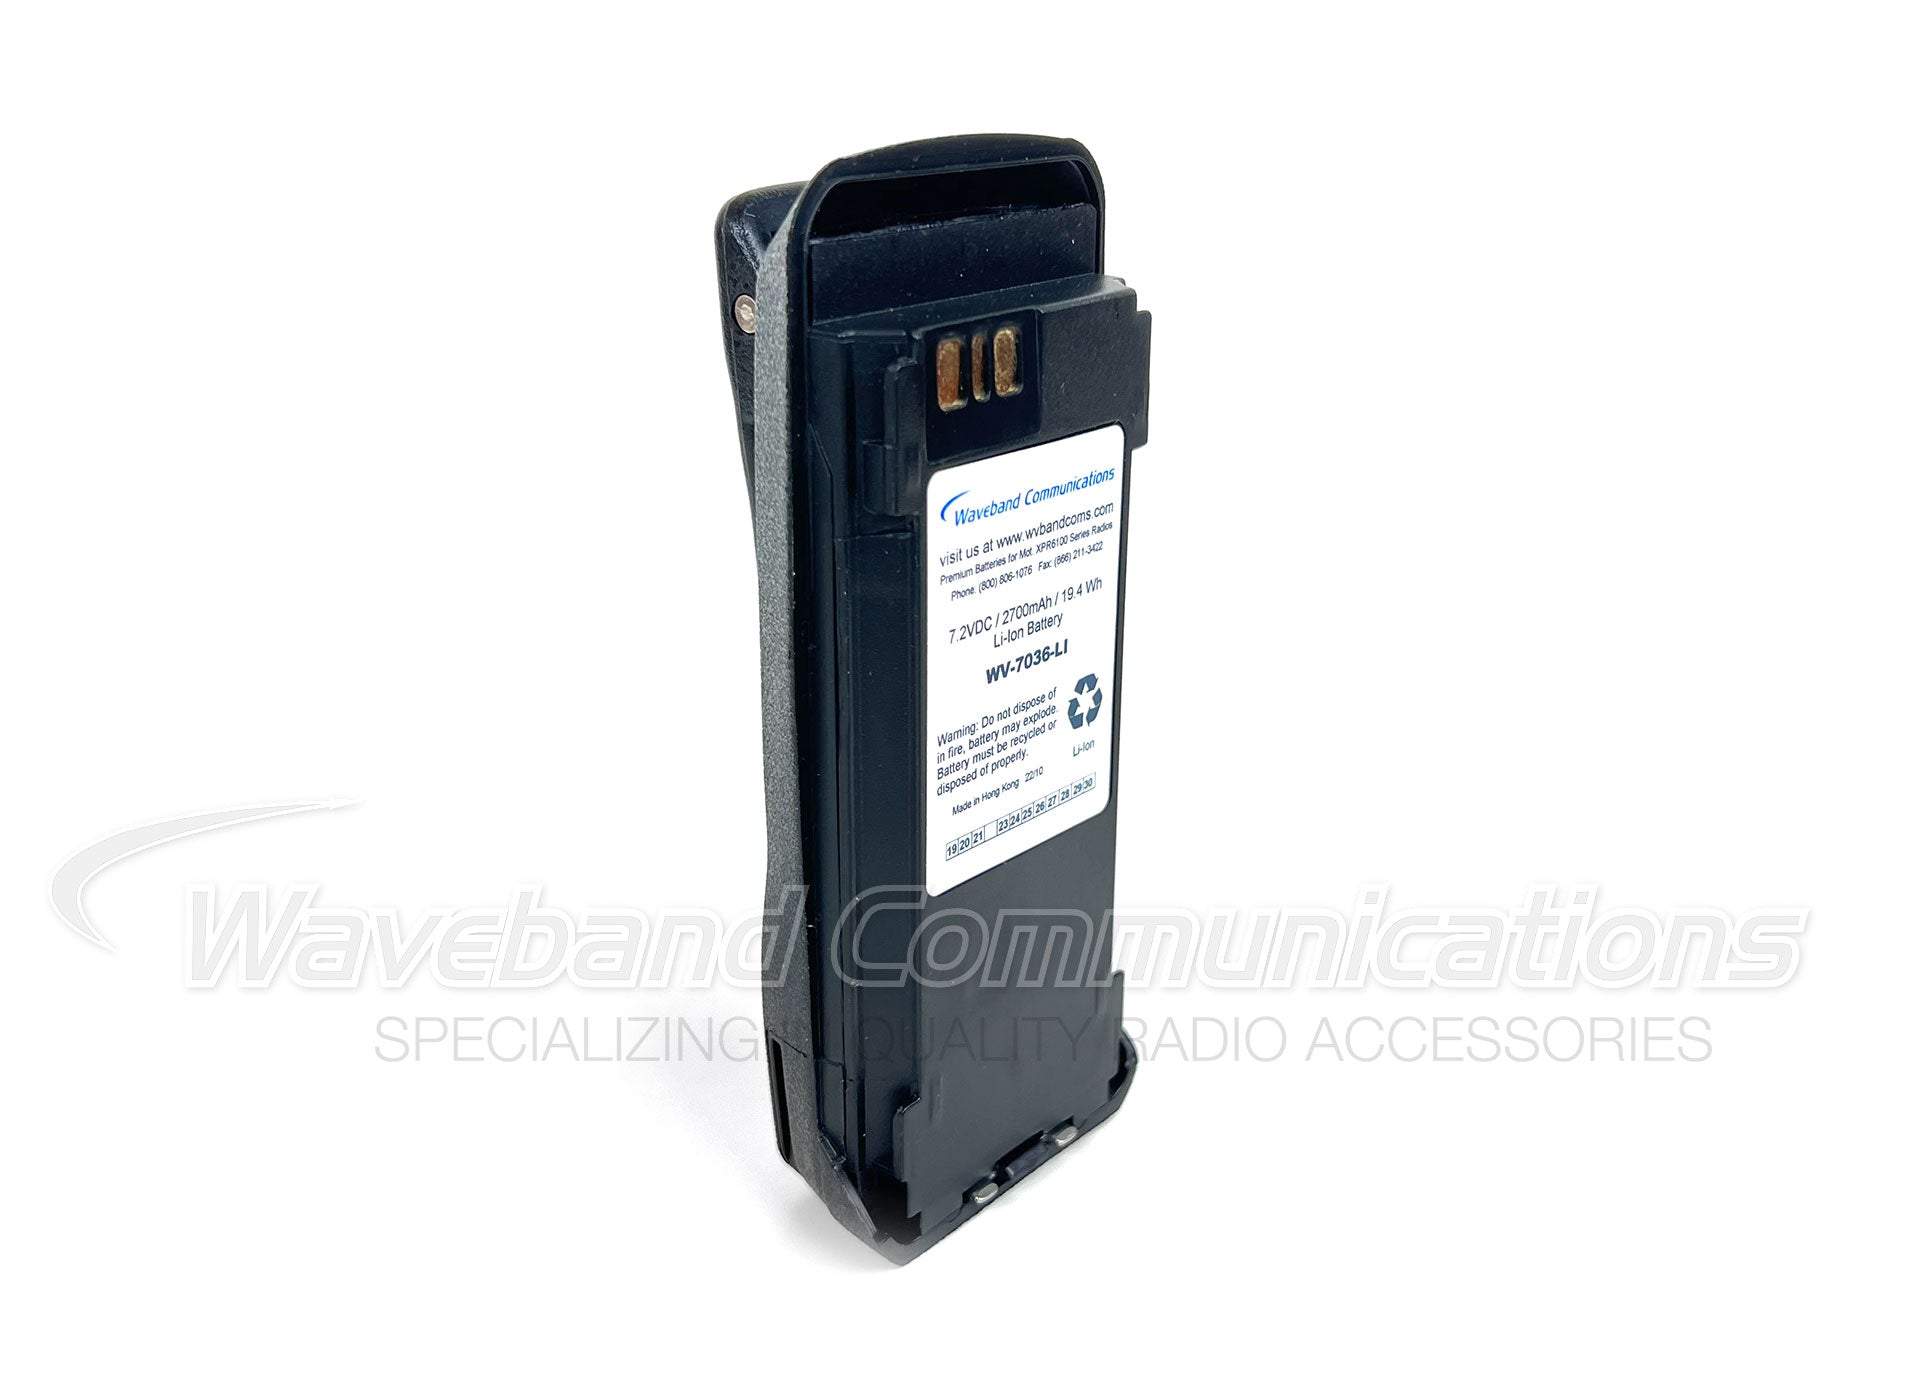 Batterie intrinsèquement sûre pour Motorola XPR6100, XPR6300, XPR6350, XPR6380, XPR6500, XPR6550, XPR6580 et norme de sommet VXD720